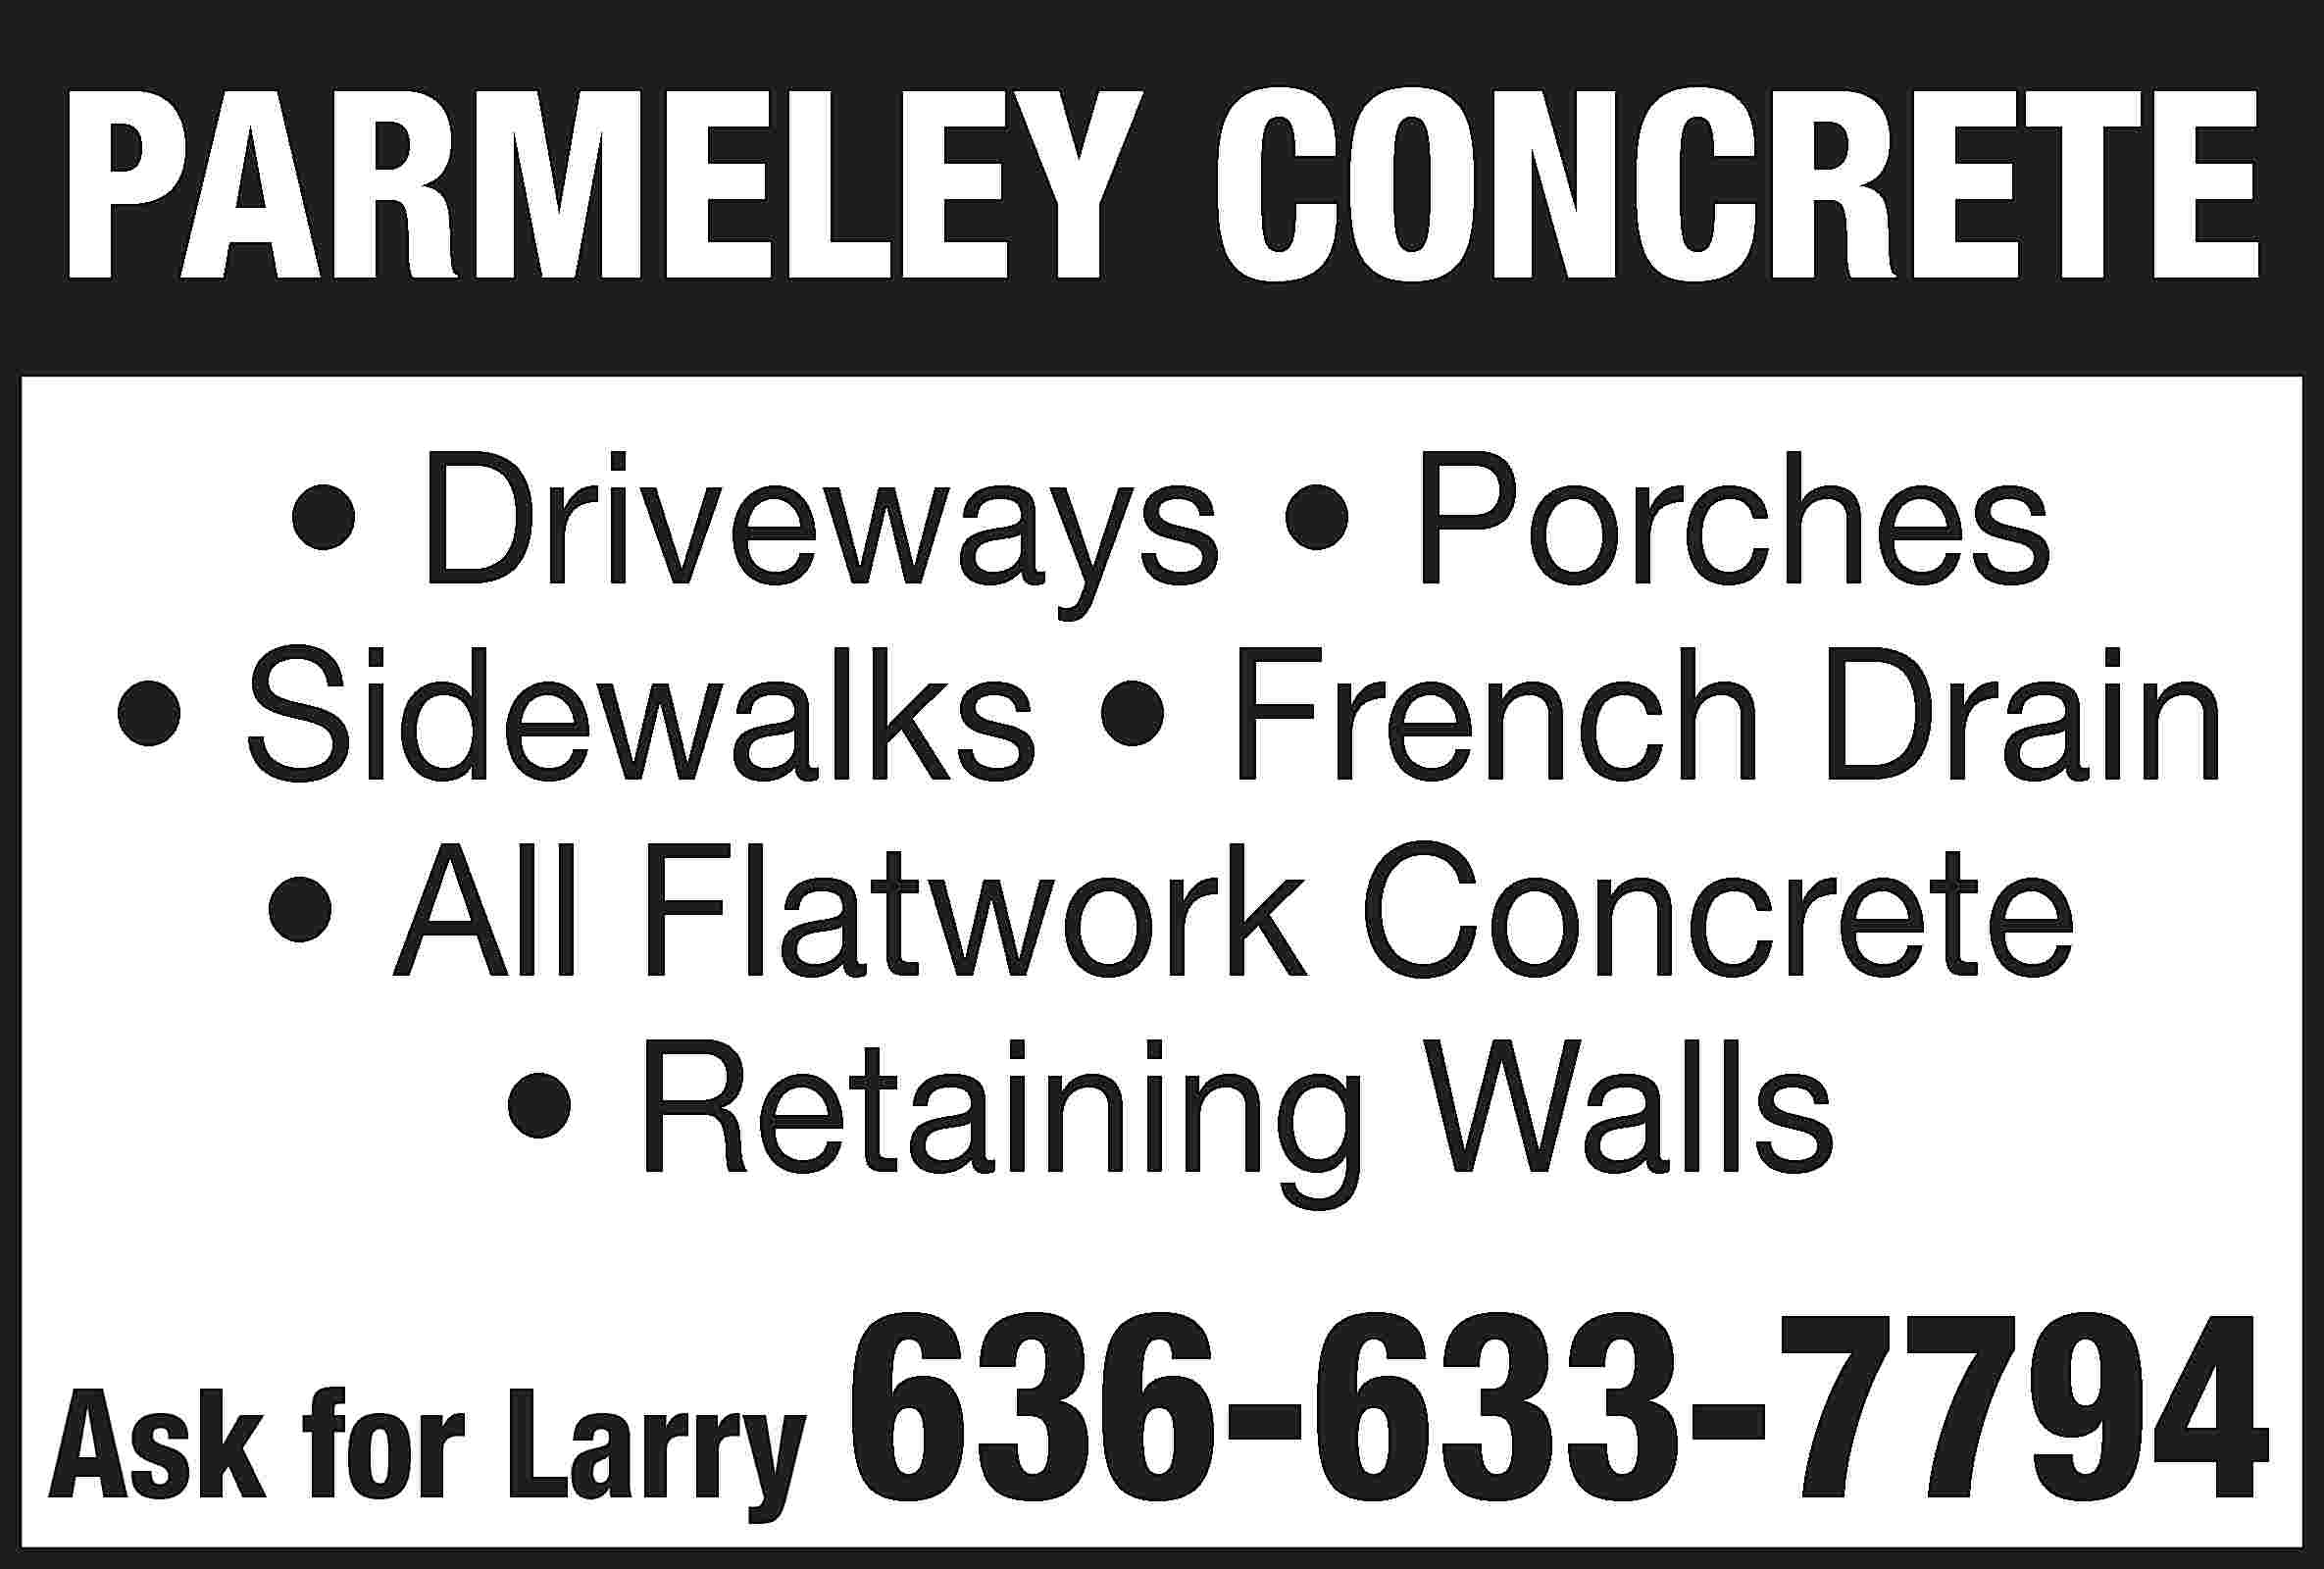 PARMELEY CONCRETE • Driveways •  PARMELEY CONCRETE • Driveways • Porches • Sidewalks • French Drain • All Flatwork Concrete • Retaining Walls Ask for Larry 636-633-7794